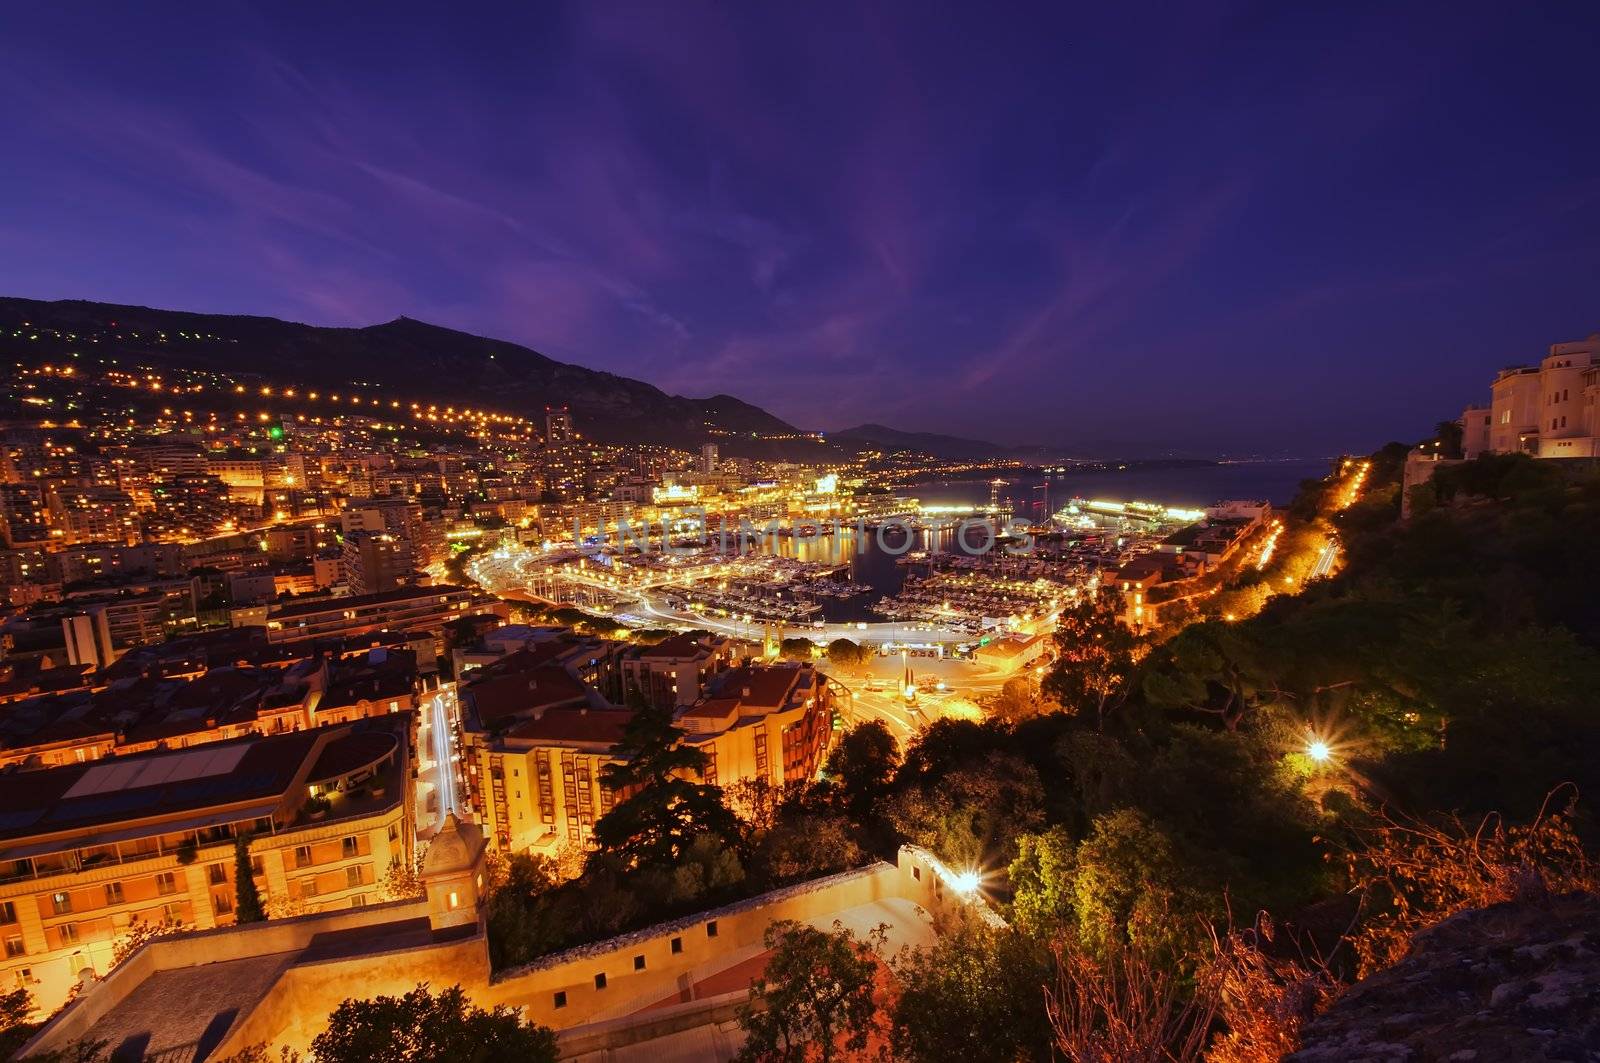 Monte Carlo port, Monaco. night scene, wide view